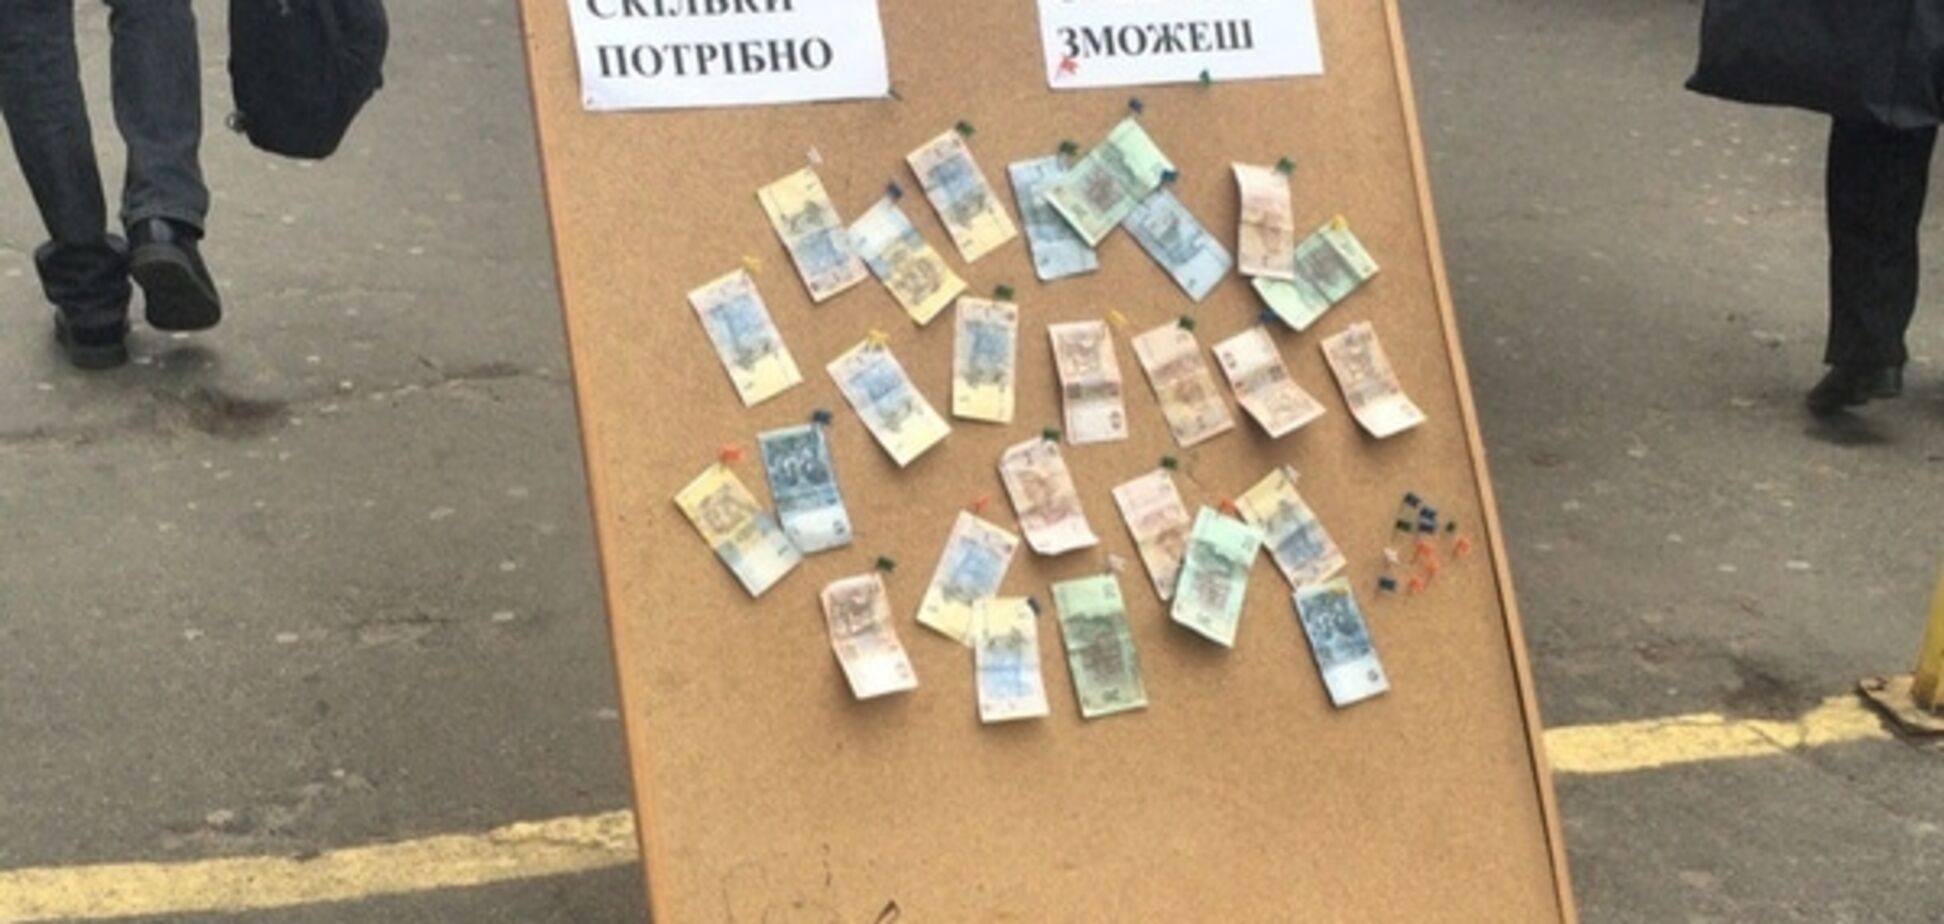 Возьми или дай: в Киеве возле метро появилась 'денежная доска'